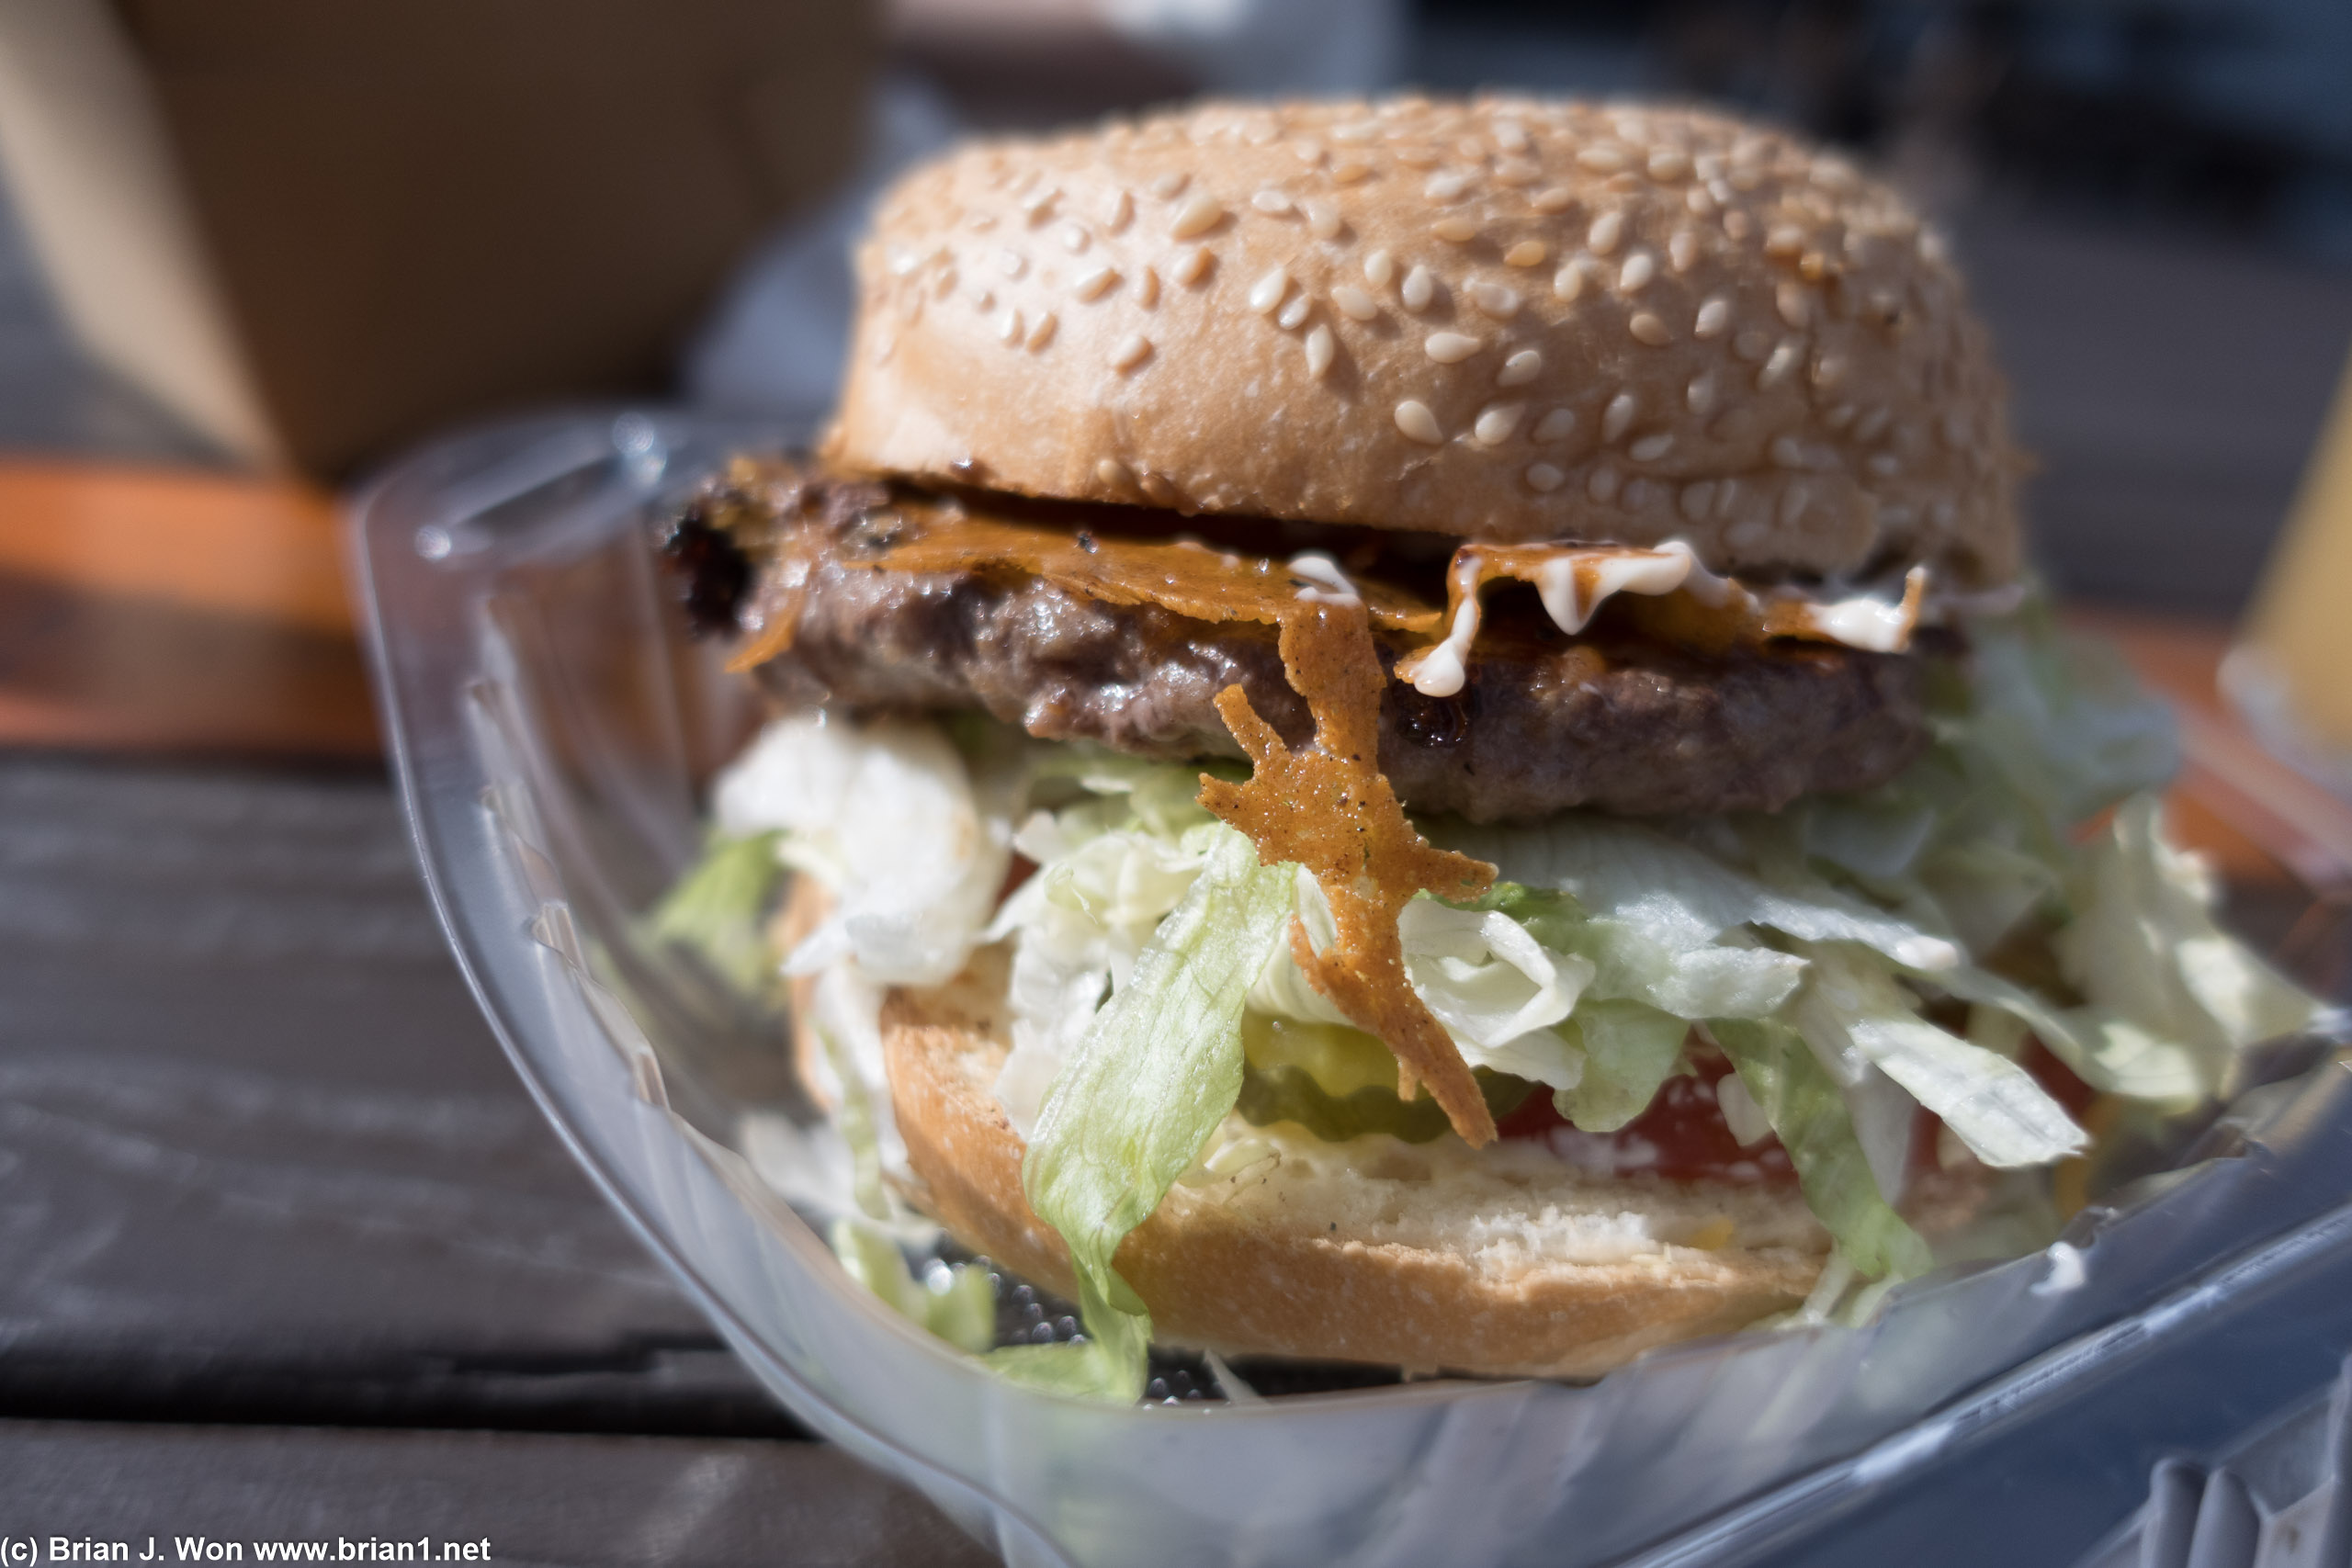 Bison Burger truck's burger wasn't bad.